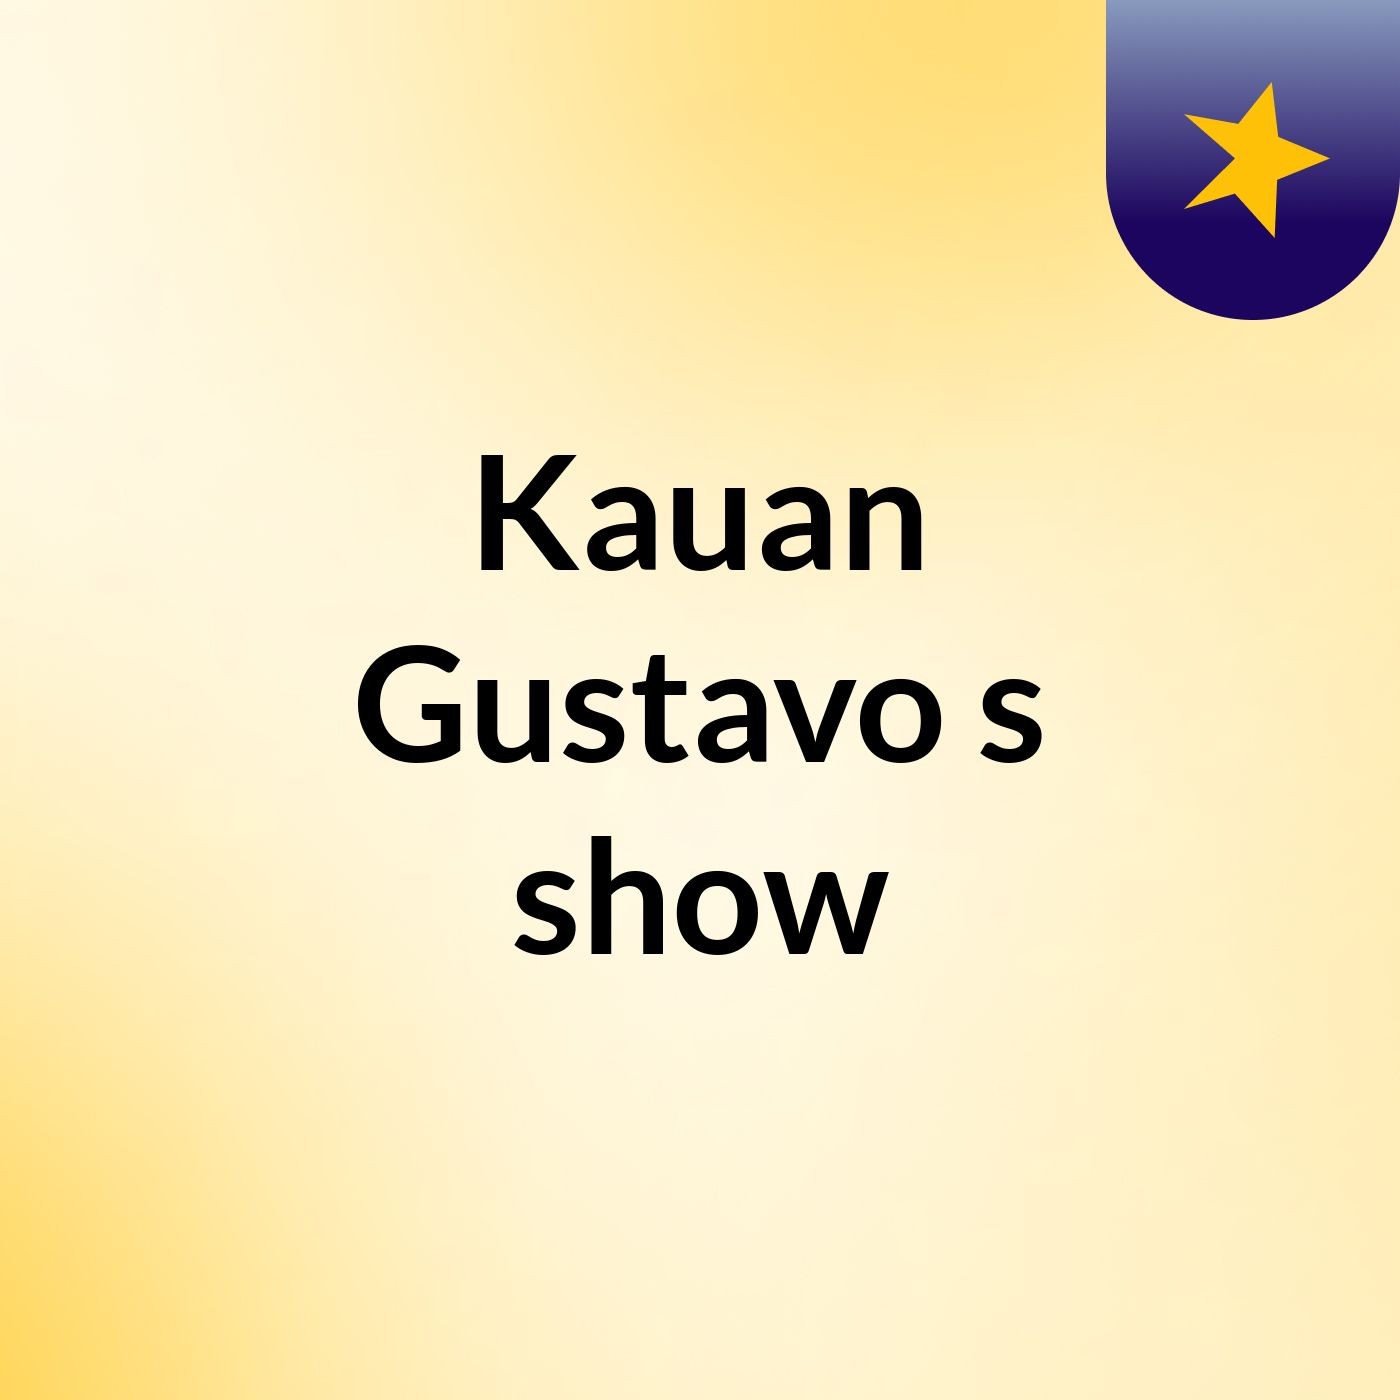 Kauan Gustavo's show